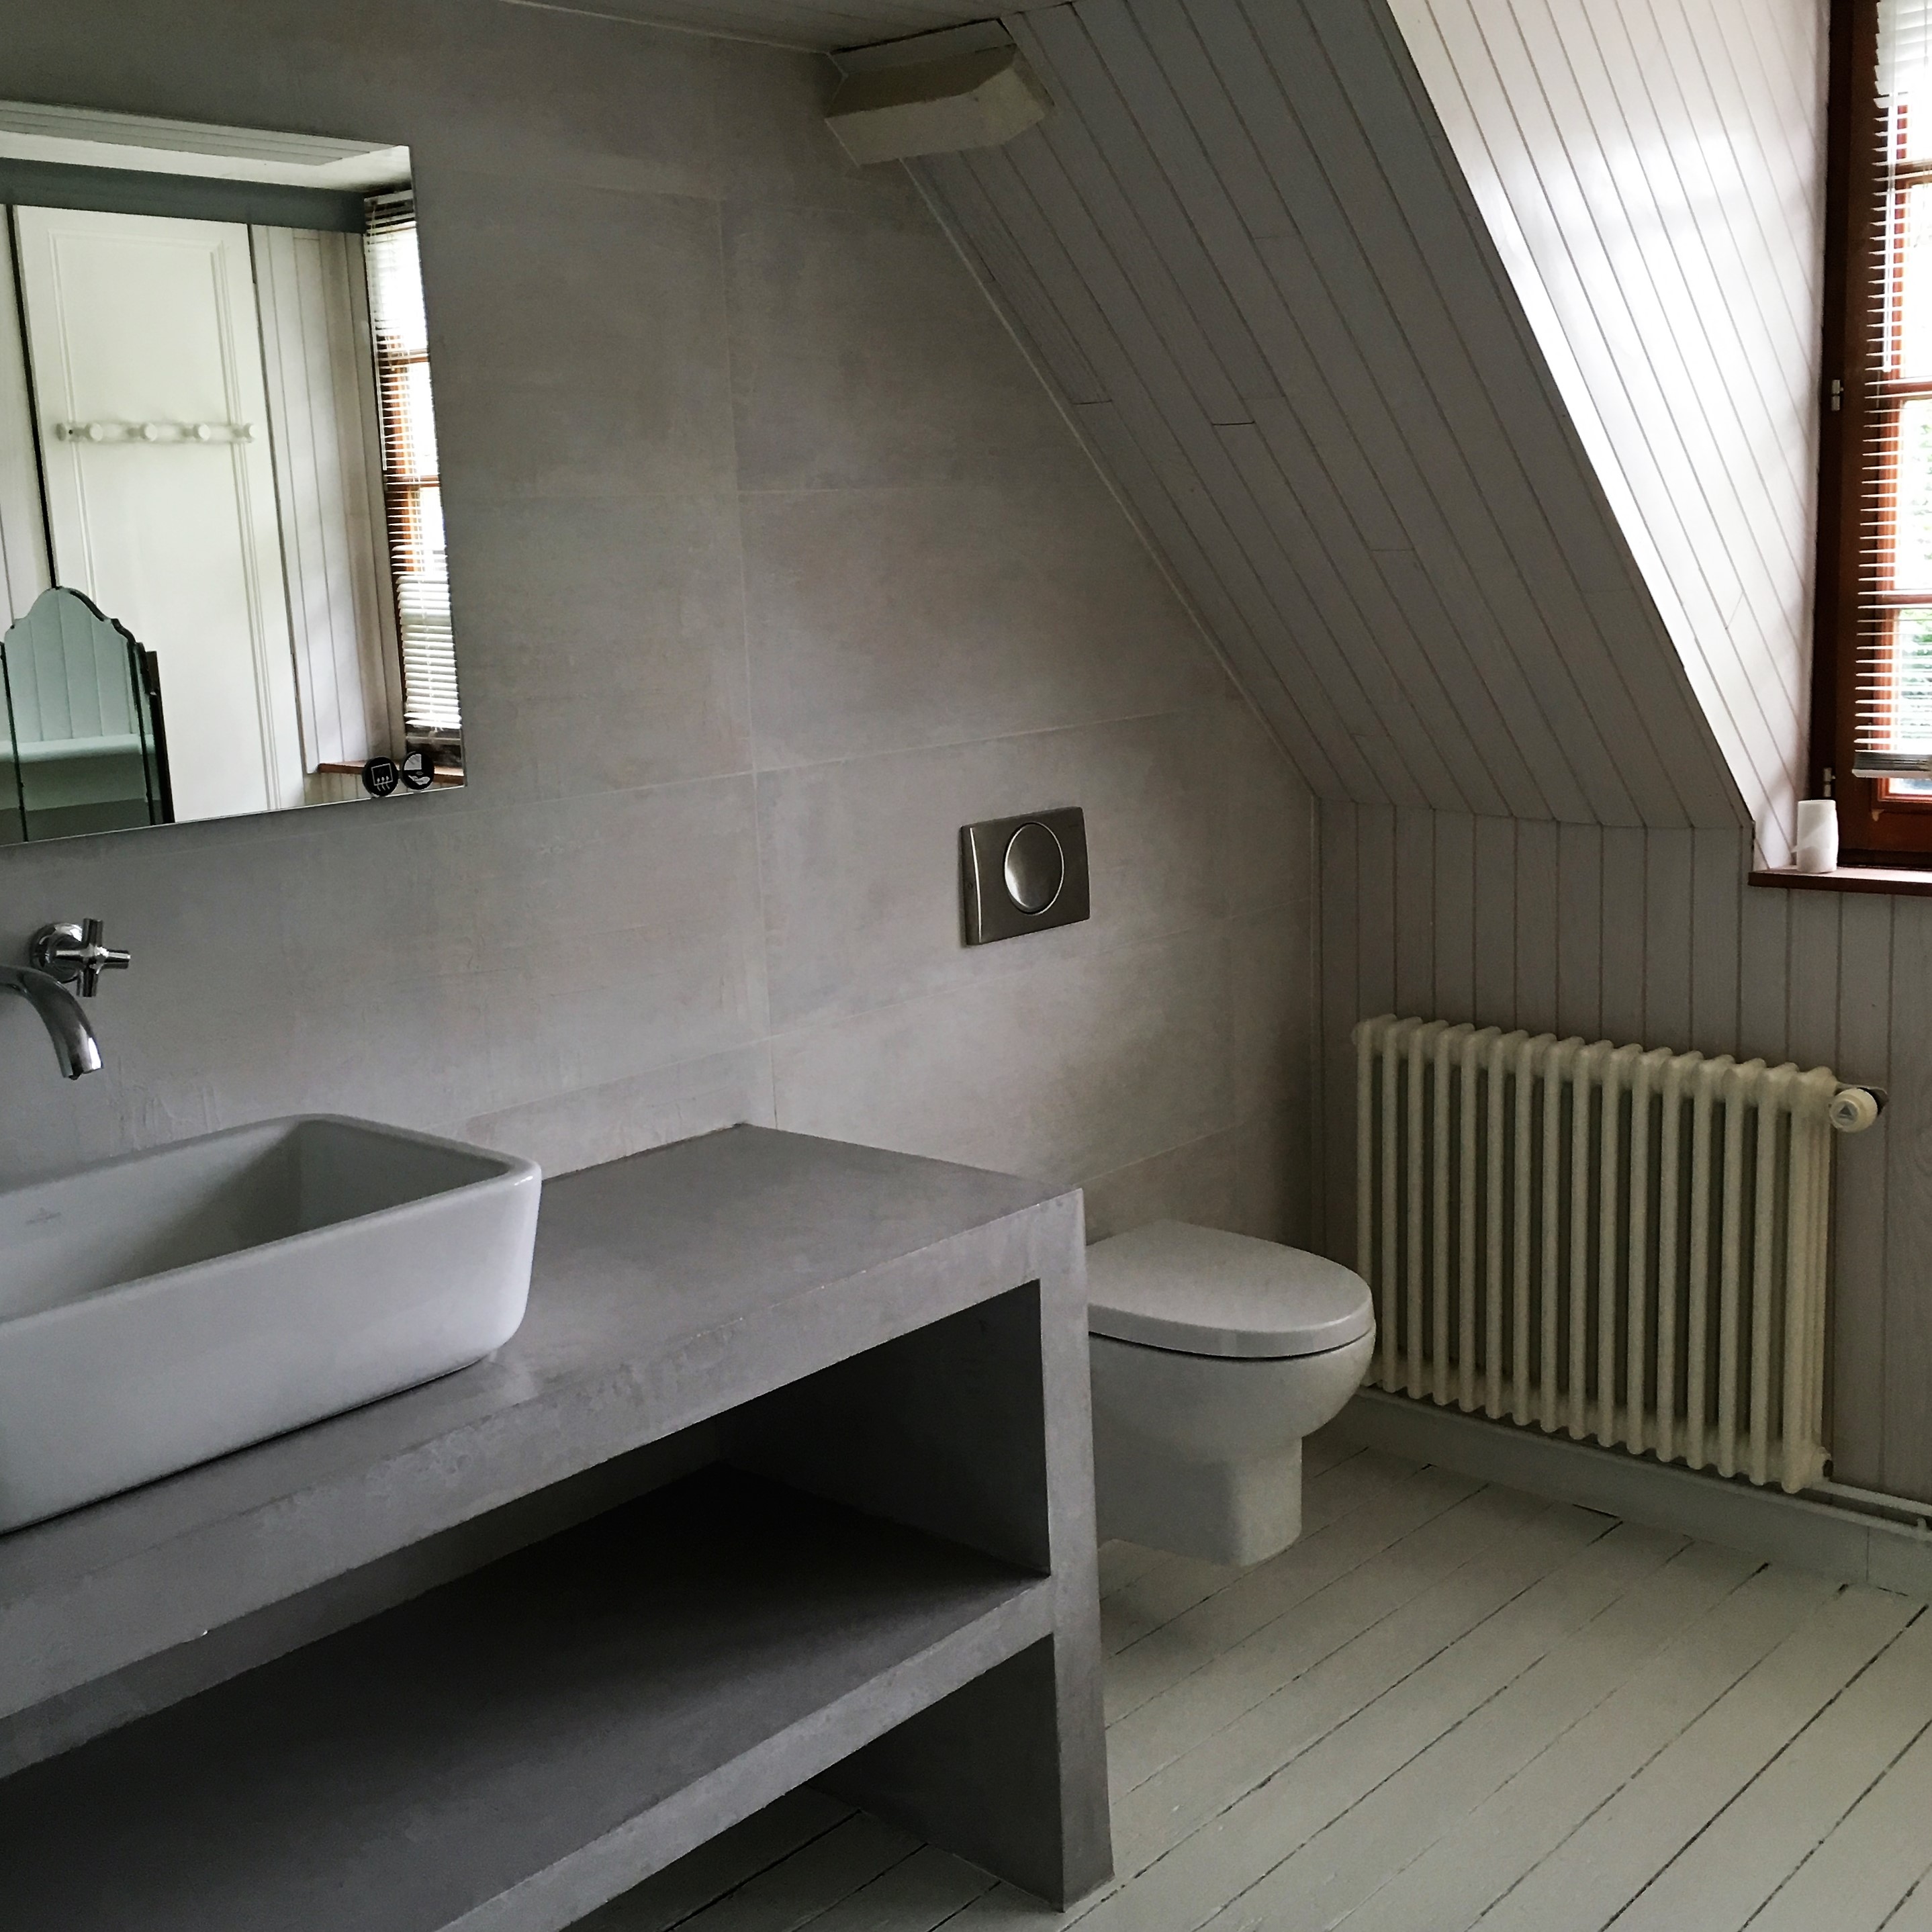 Création d'une pièce d'eau et rénovation complète d'une salle de bain - 14130 BONNEVILLE LA LOUVET